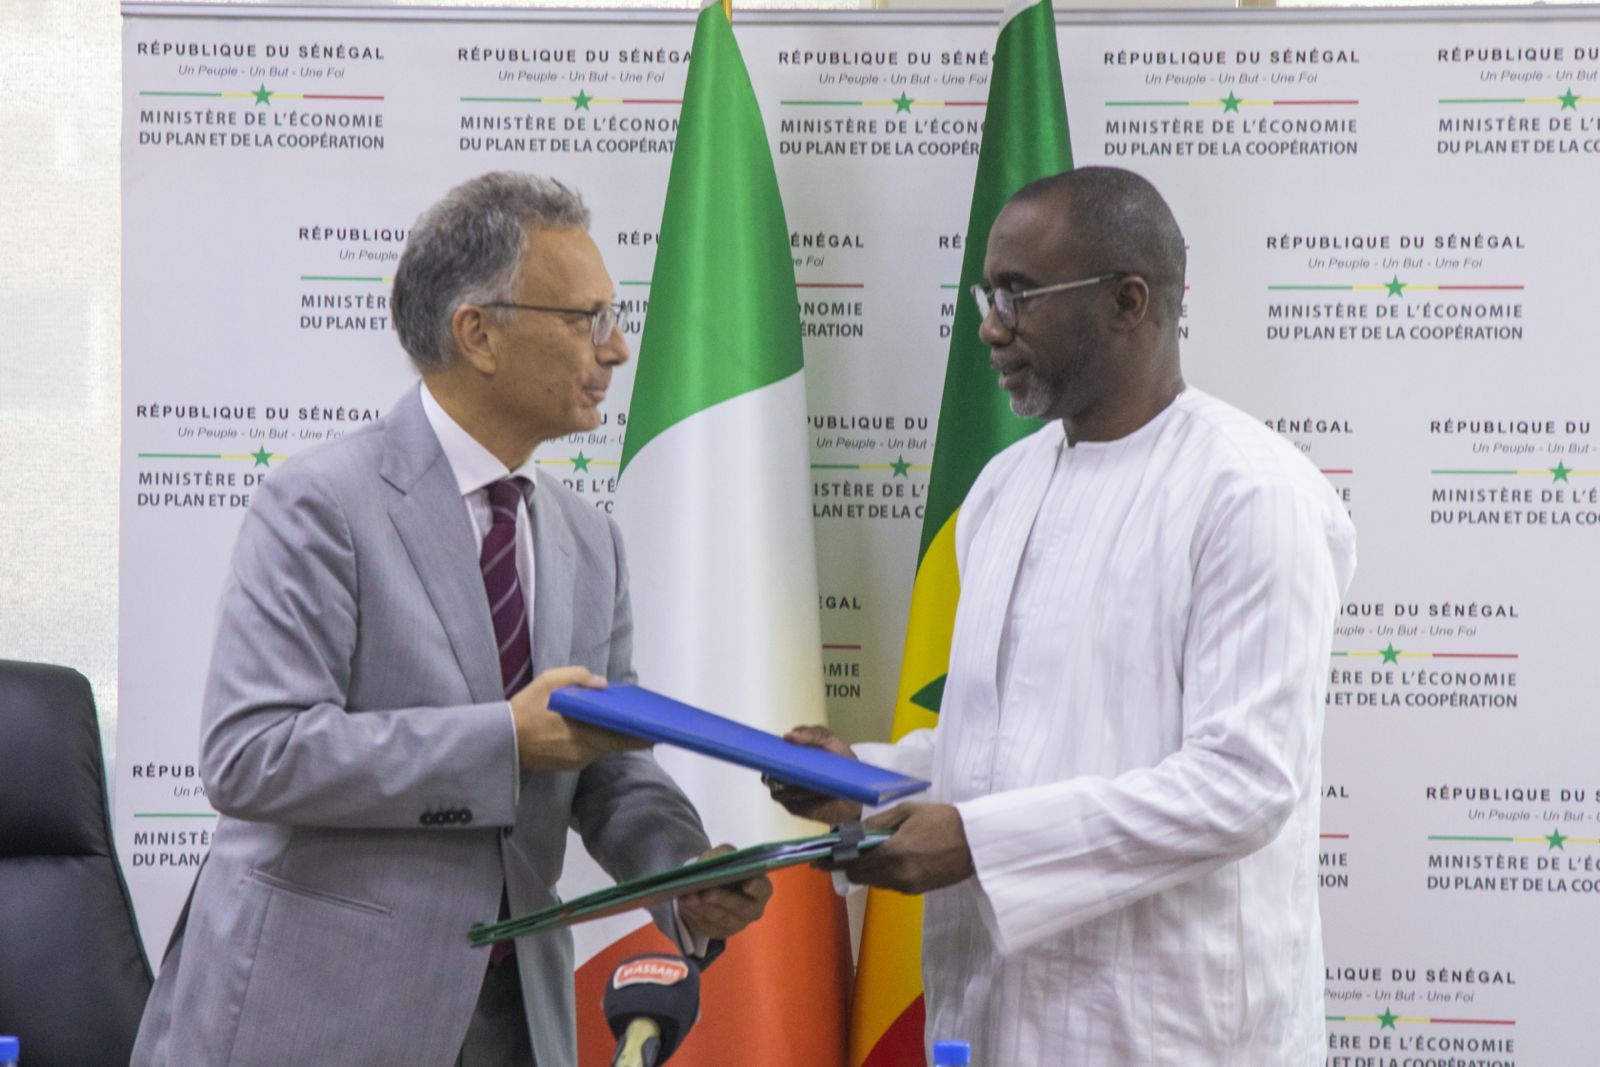 Sénégal-Italie : Signature de deux accords de financement de 7 millions d’euros